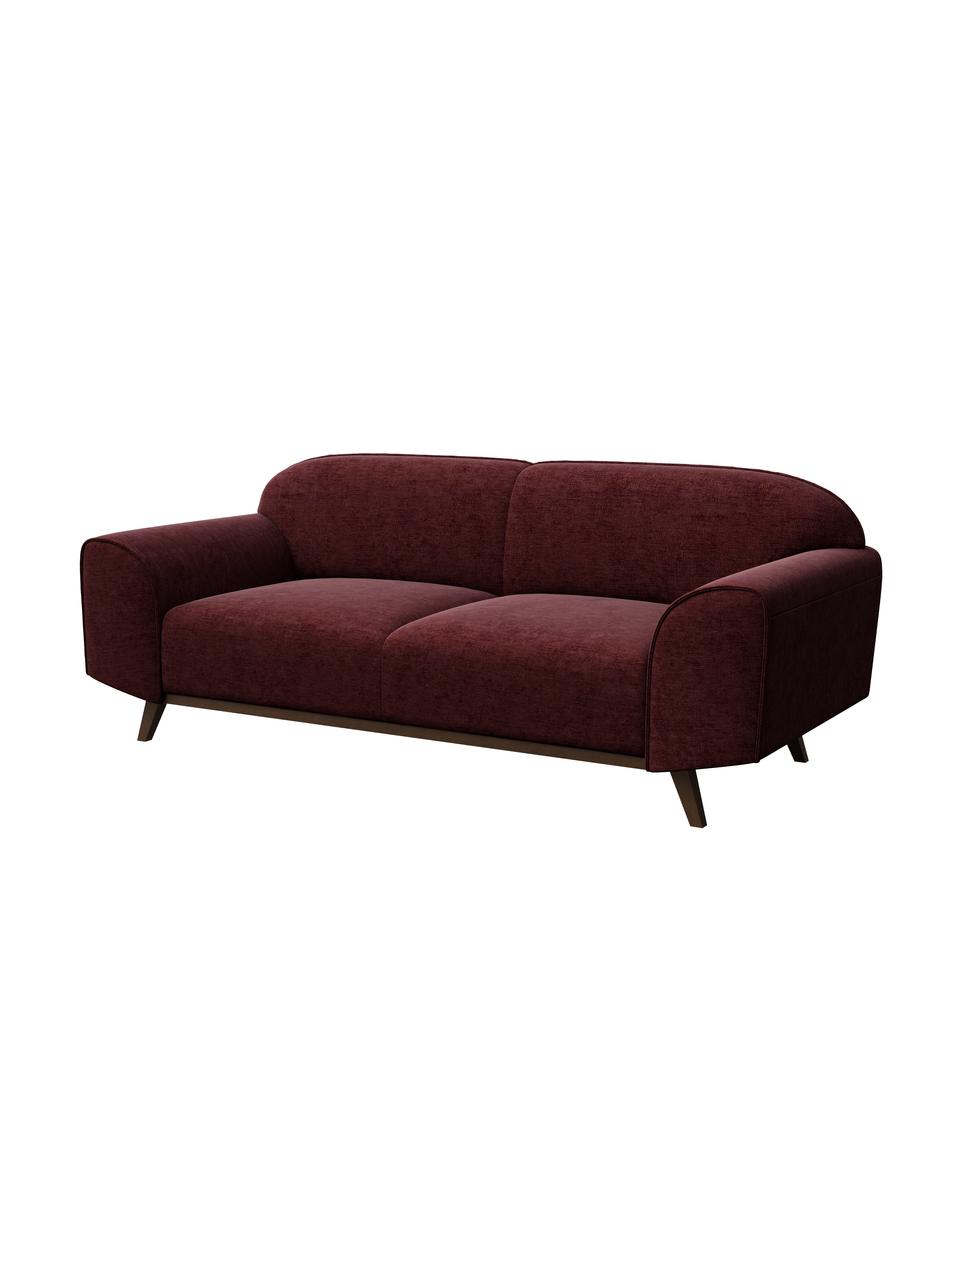 Sofa z Zero Spot System  Nesbo (2-osobowa), Tapicerka: 100% poliester z Zero Spo, Nogi: metal lakierowany, Ciemny czerwony, S 193 x G 83 cm